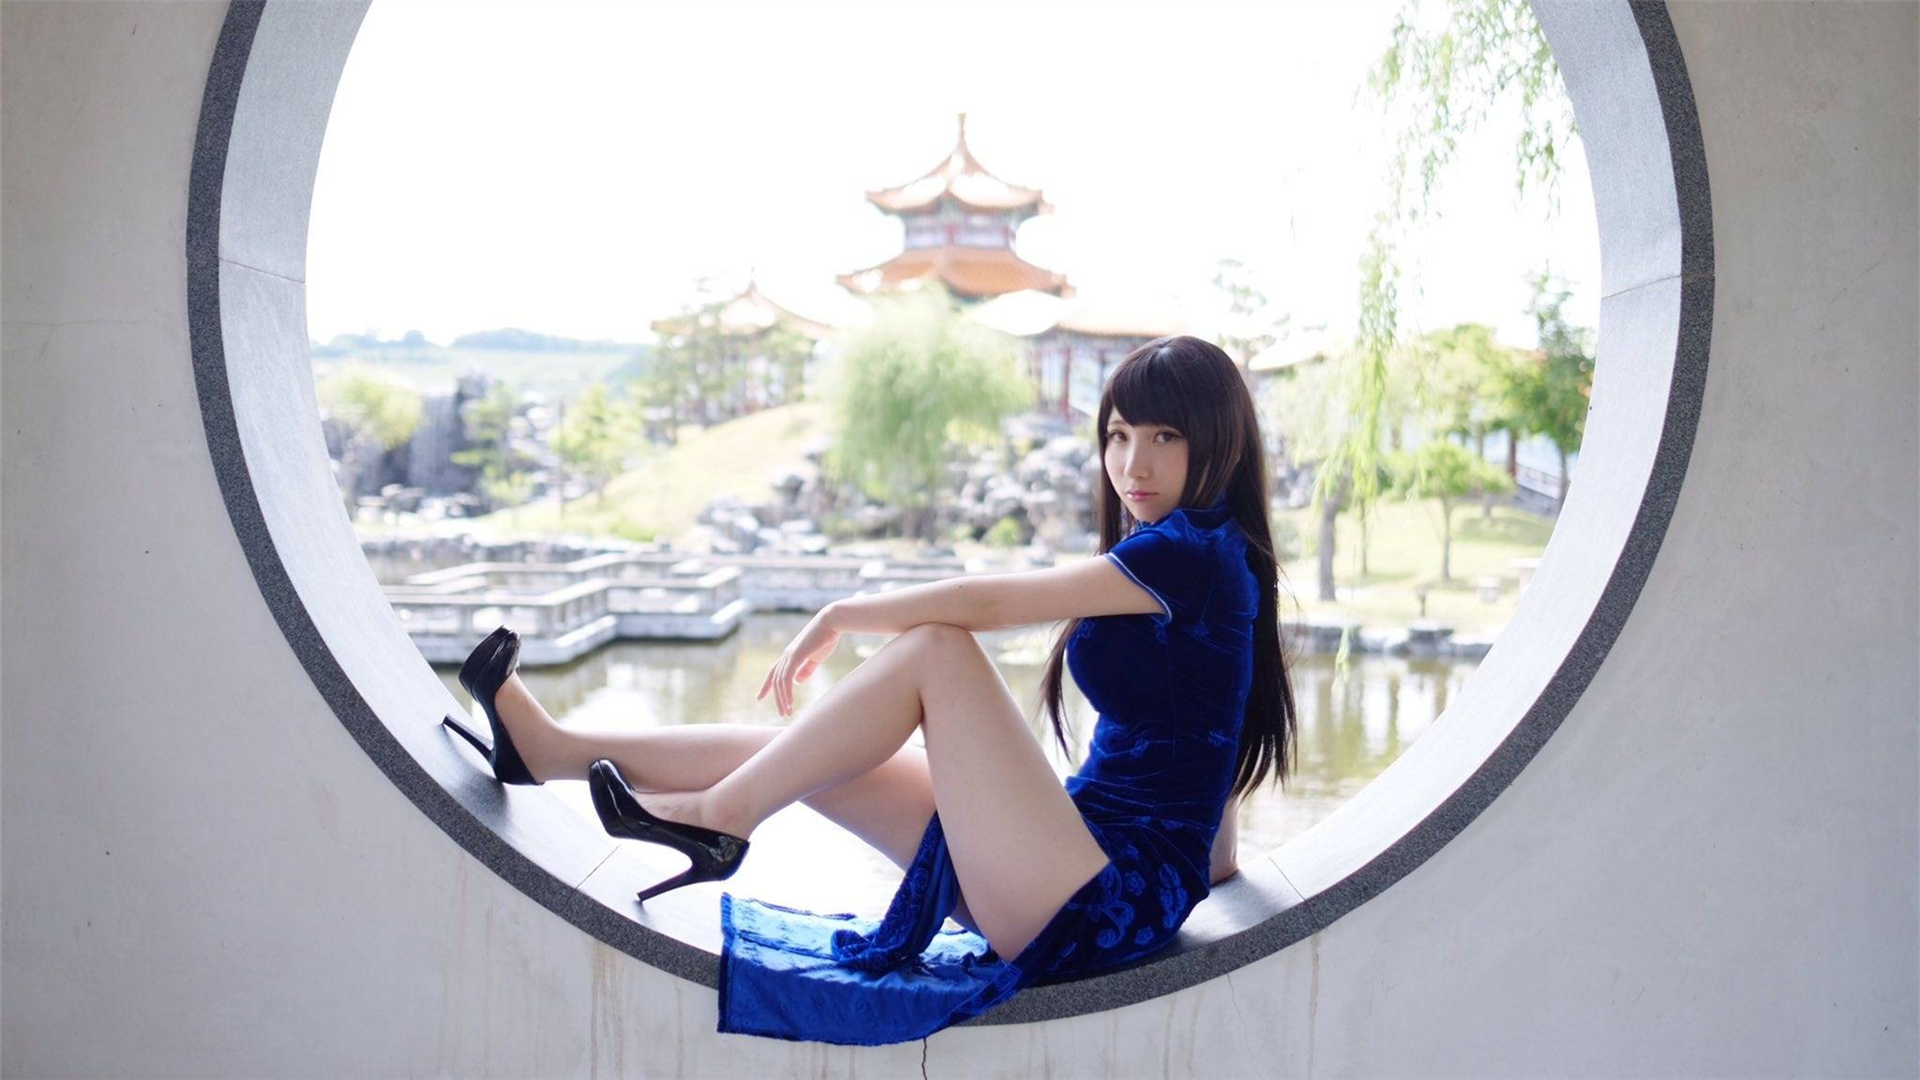 People 1920x1080 women Asian cheongsam dark hair blue dress legs high heels